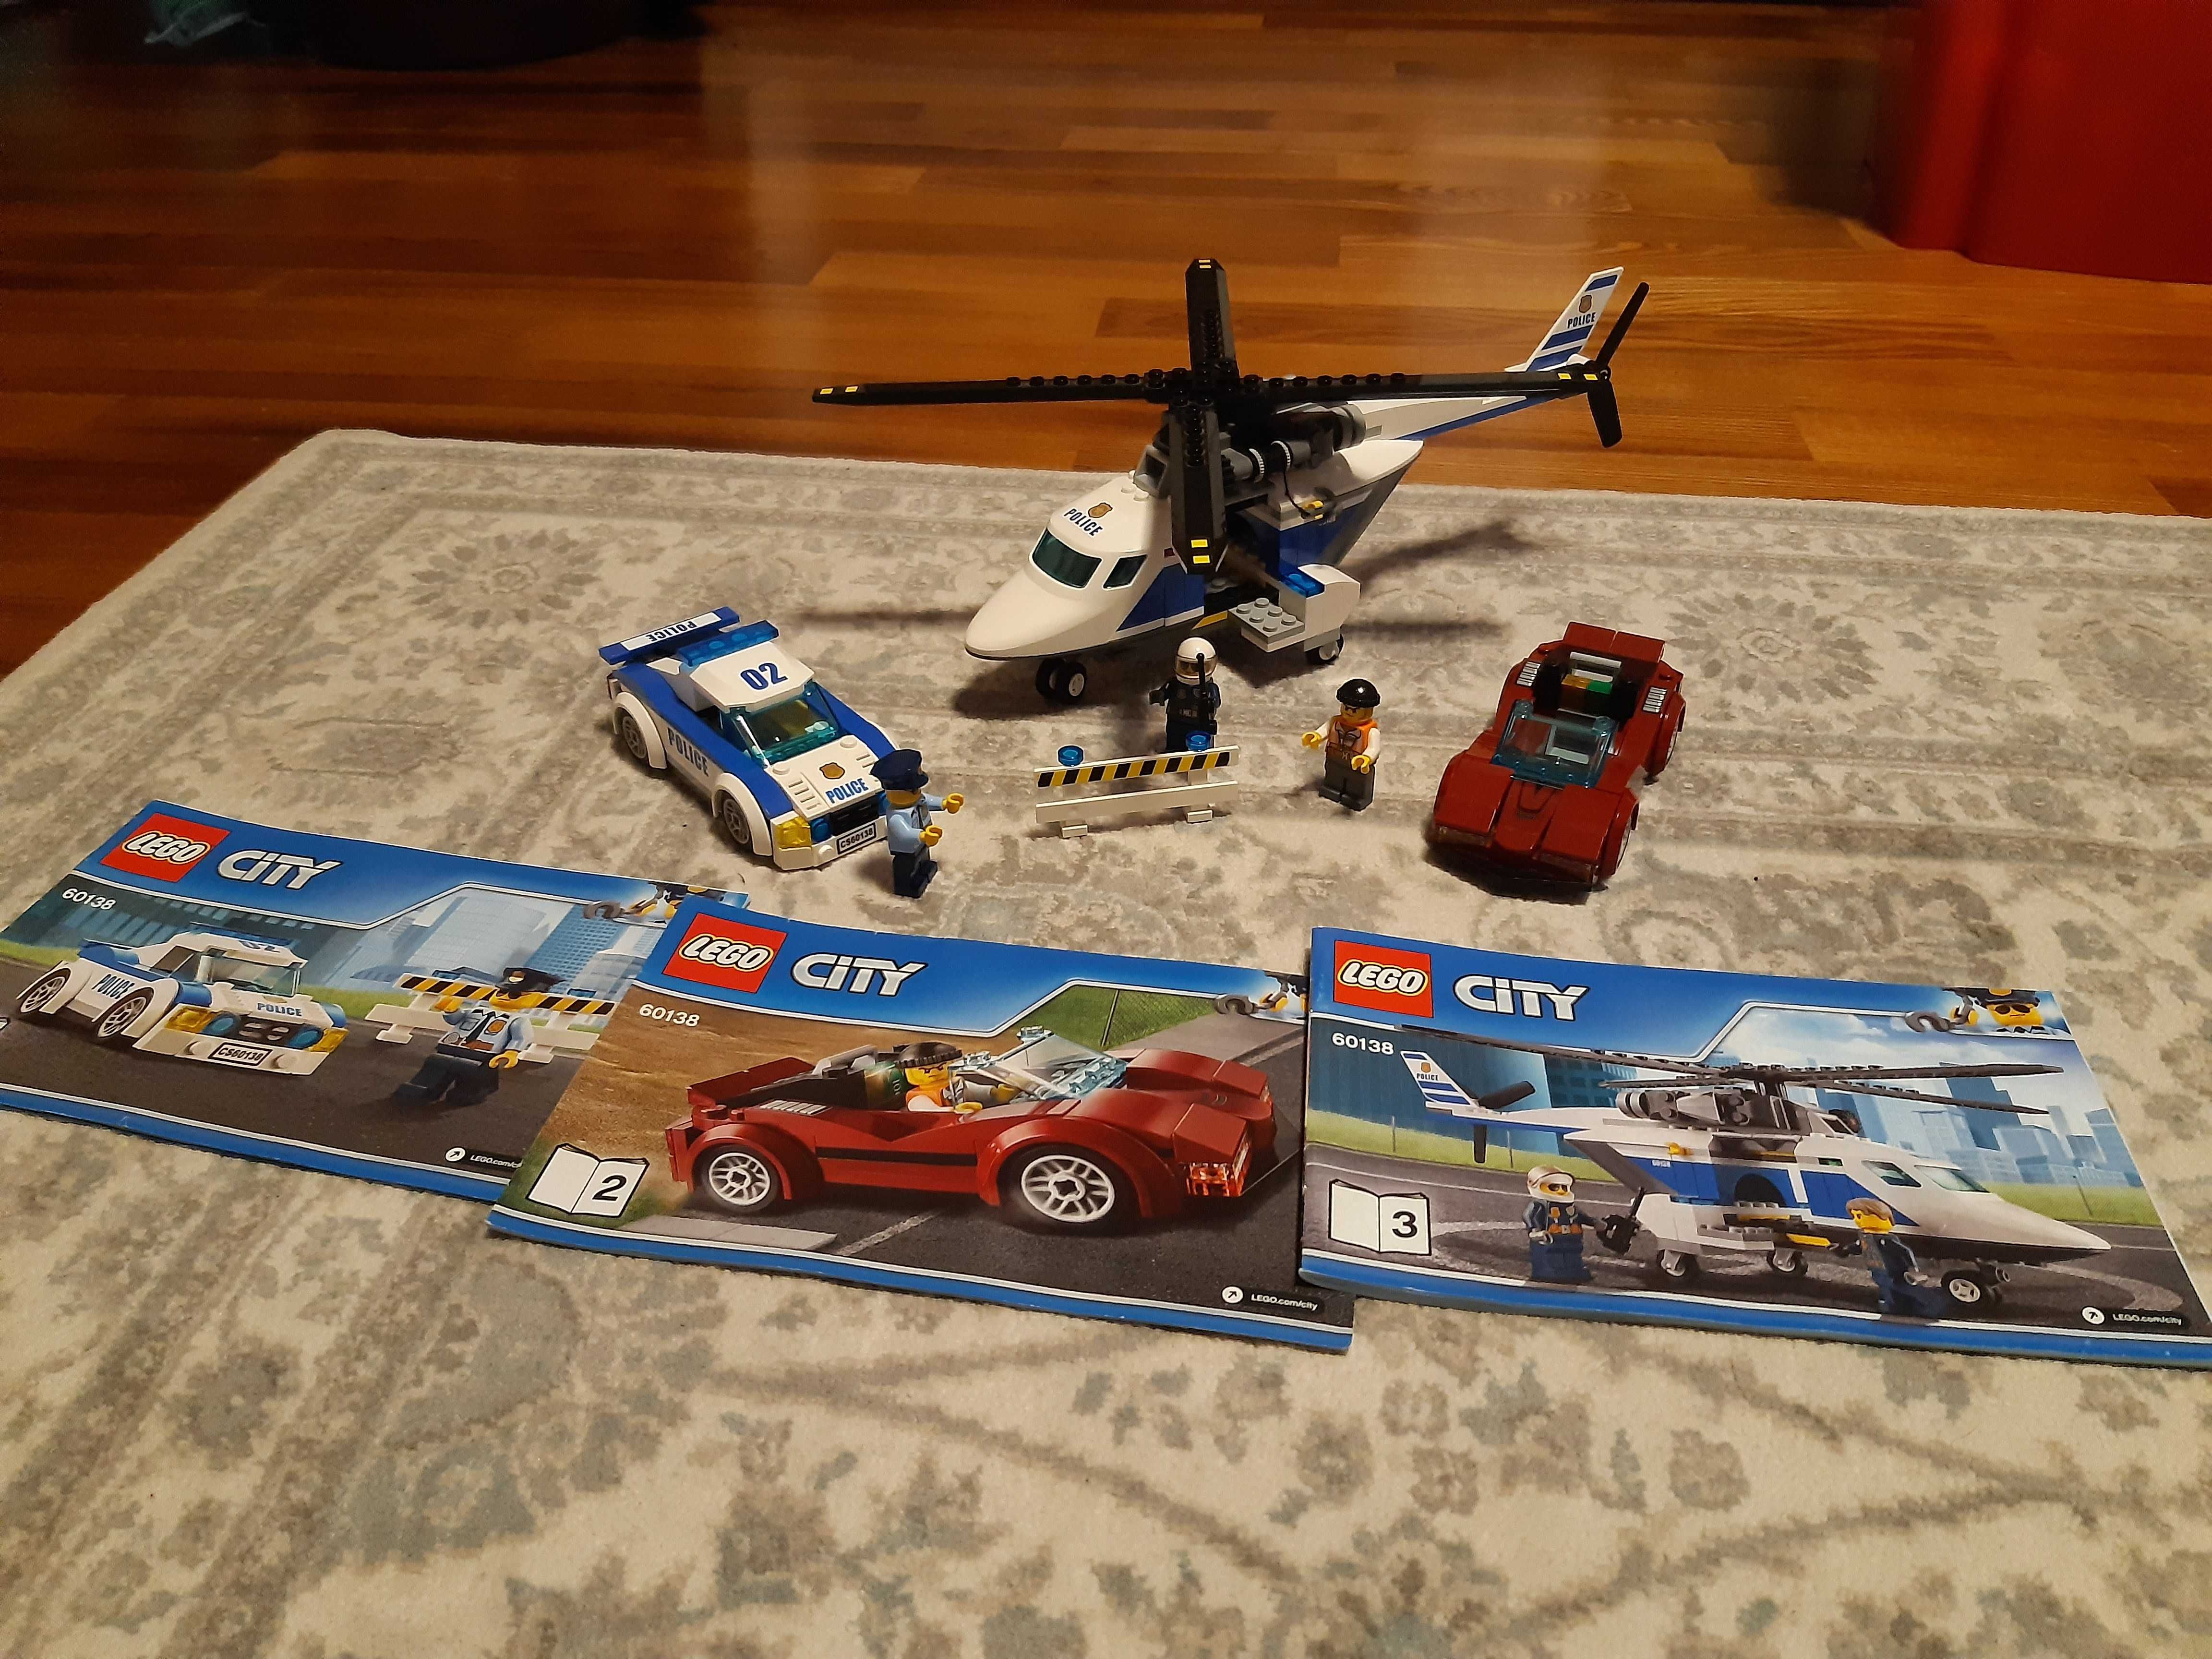 LEGO CITY 60138 - Pościg policyjny